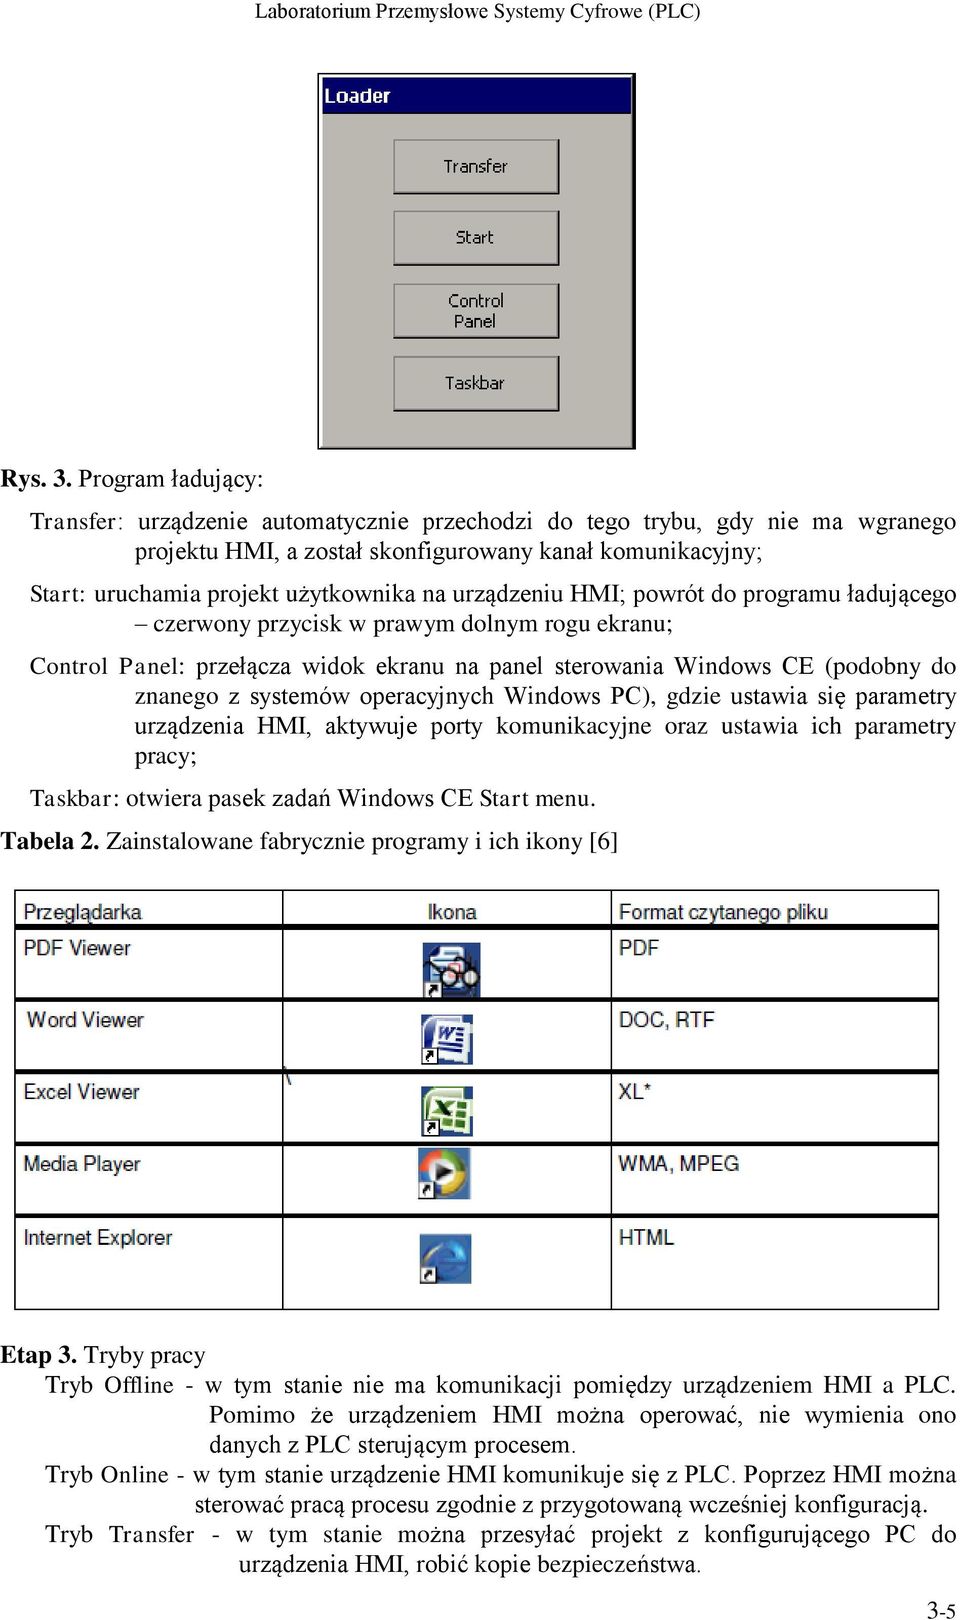 urządzeniu HMI; powrót do programu ładującego czerwony przycisk w prawym dolnym rogu ekranu; Control Panel: przełącza widok ekranu na panel sterowania Windows CE (podobny do znanego z systemów